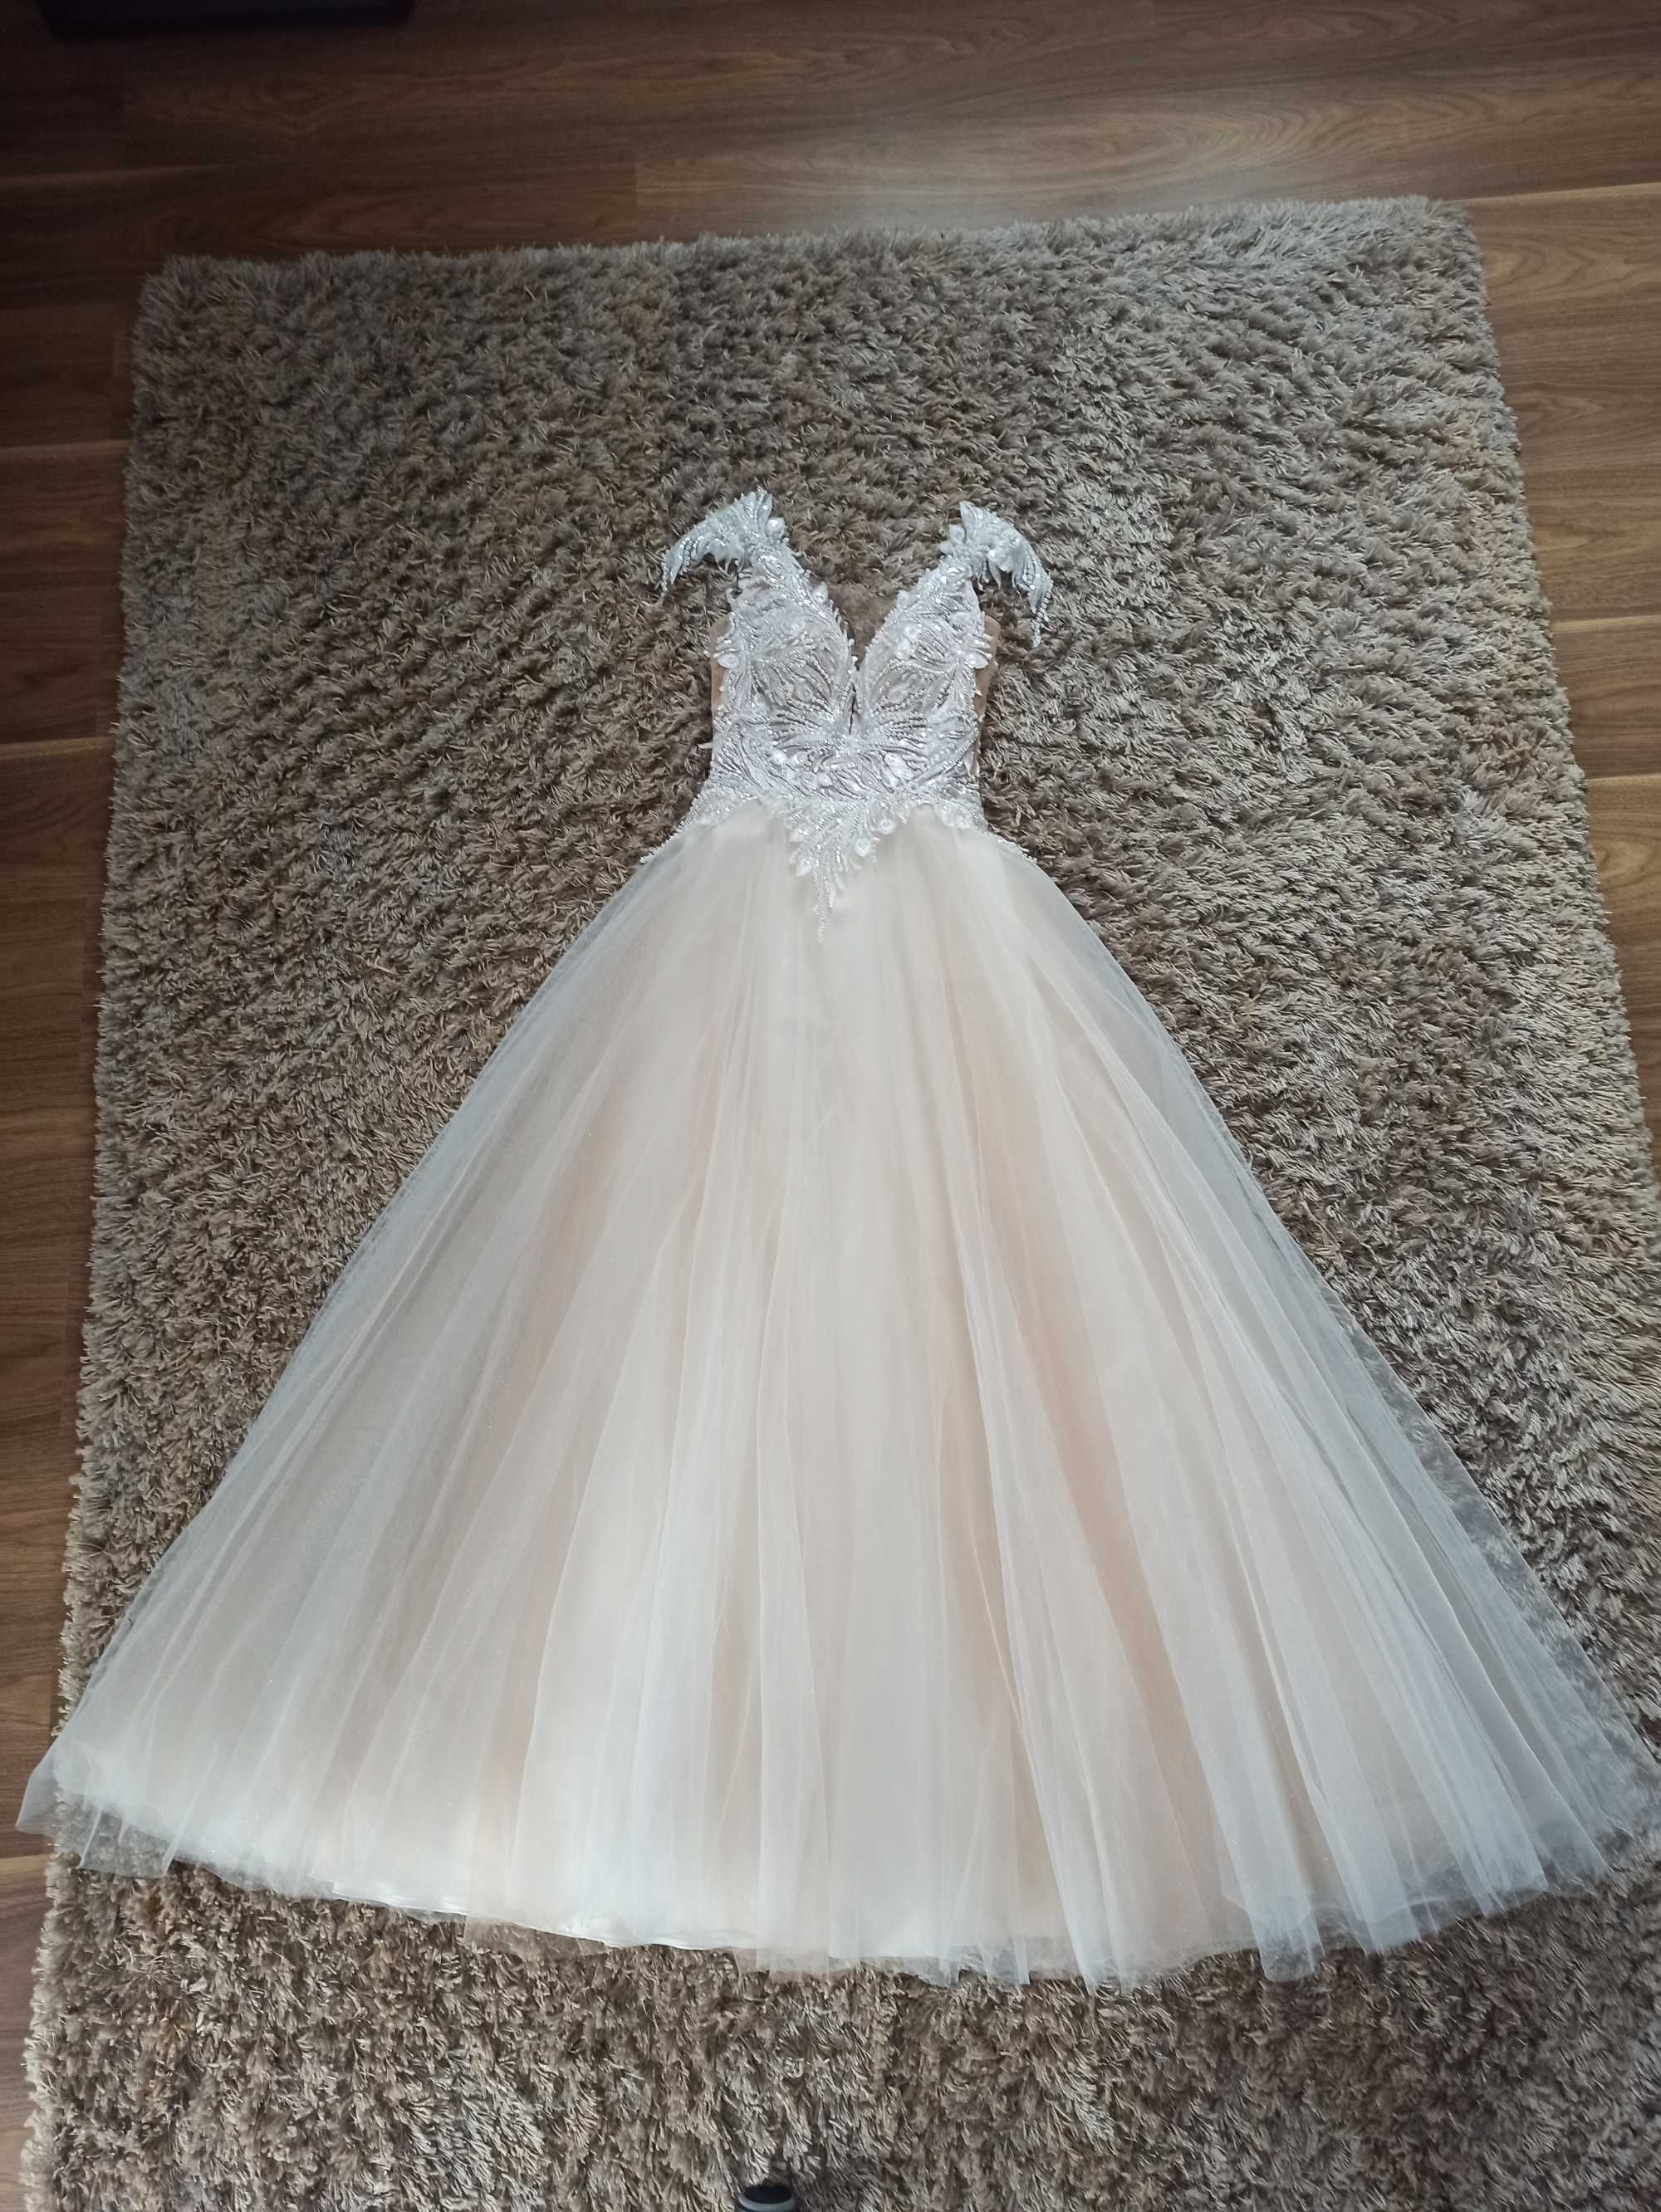 Bogato zdobiona suknia ślubna tiulowa z welonem